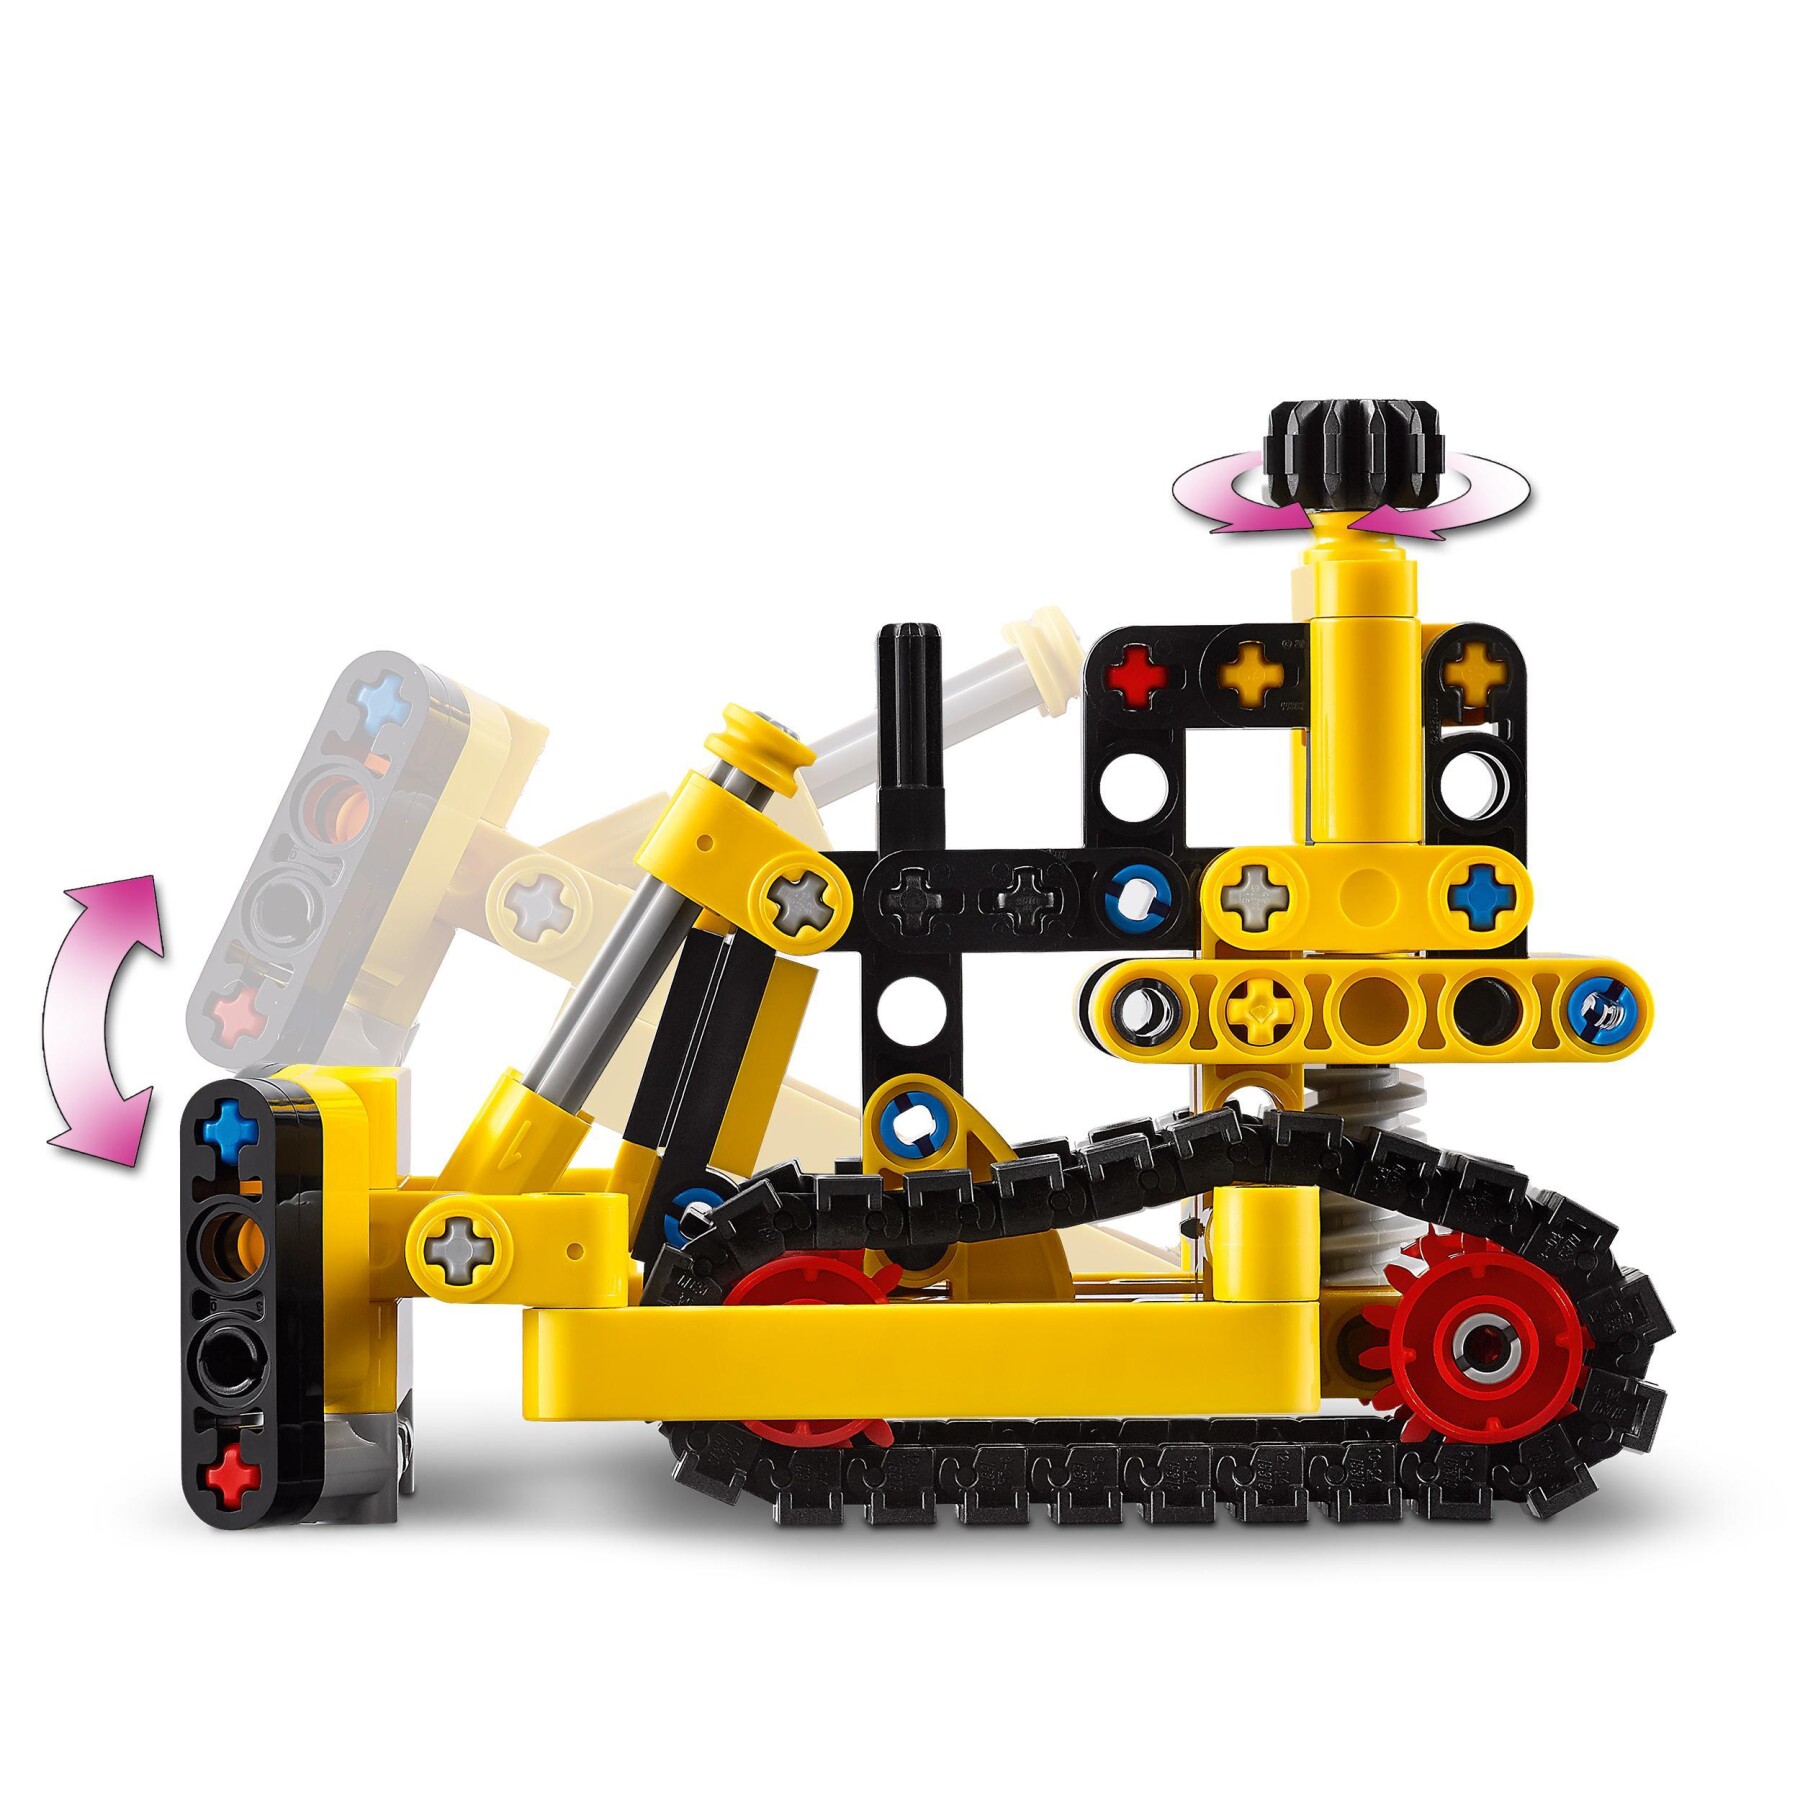 Lego technic 42163 bulldozer da cantiere, giochi per bambini e bambine di 7+ anni, regalo per amanti dei veicoli giocattolo - LEGO TECHNIC